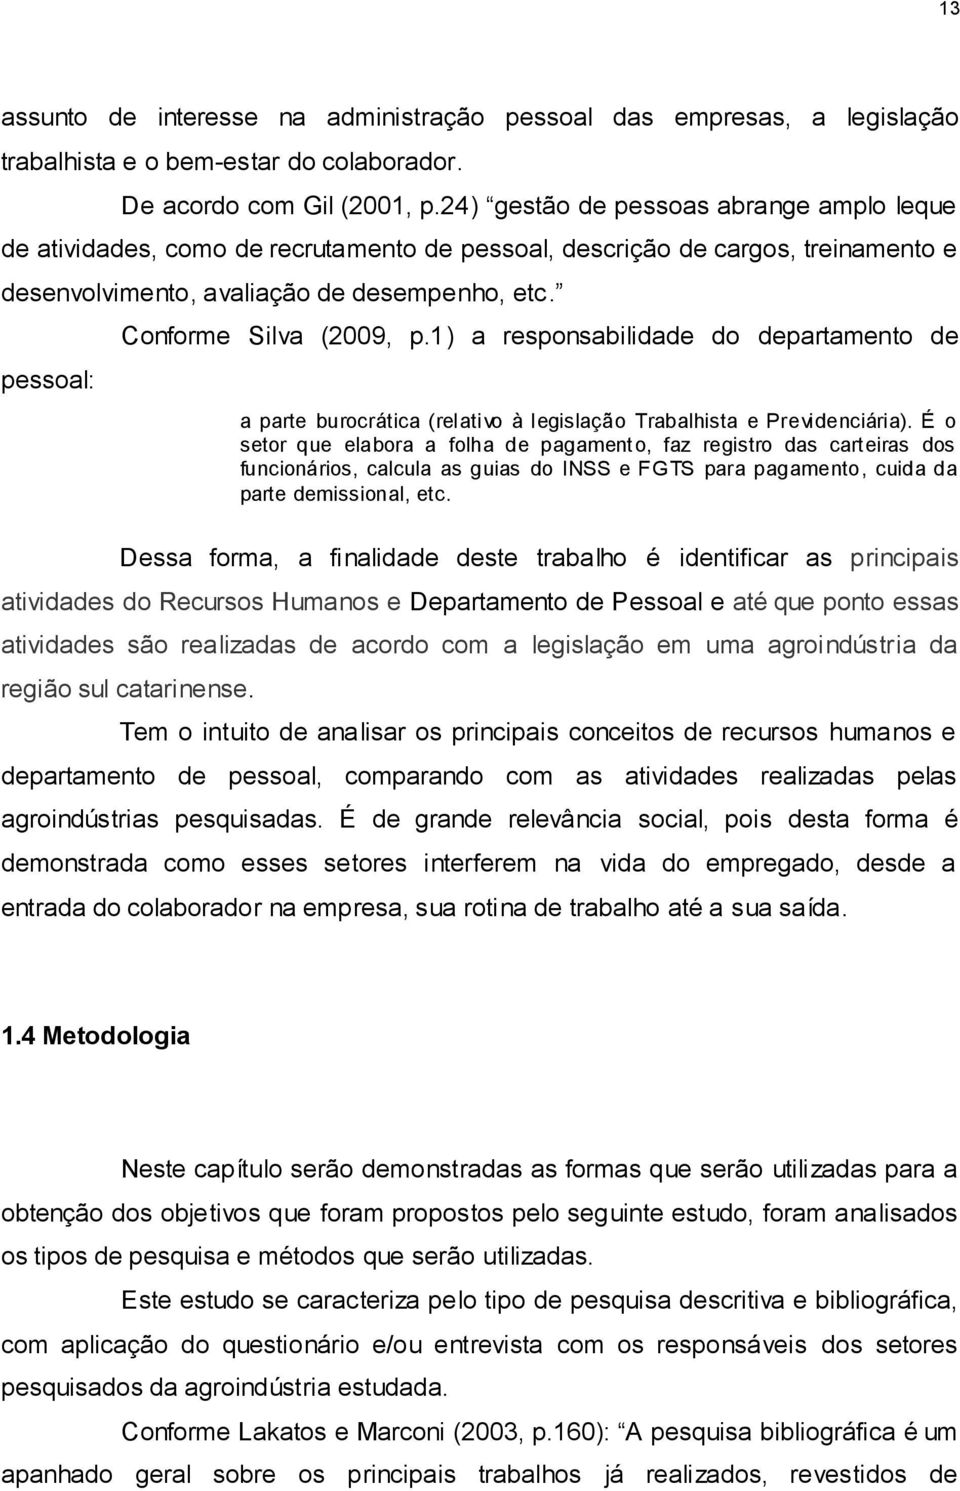 pessoal: Conforme Silva (2009, p.1) a responsabilidade do departamento de a parte burocrática (relativo à legislação Trabalhista e Previdenciária).